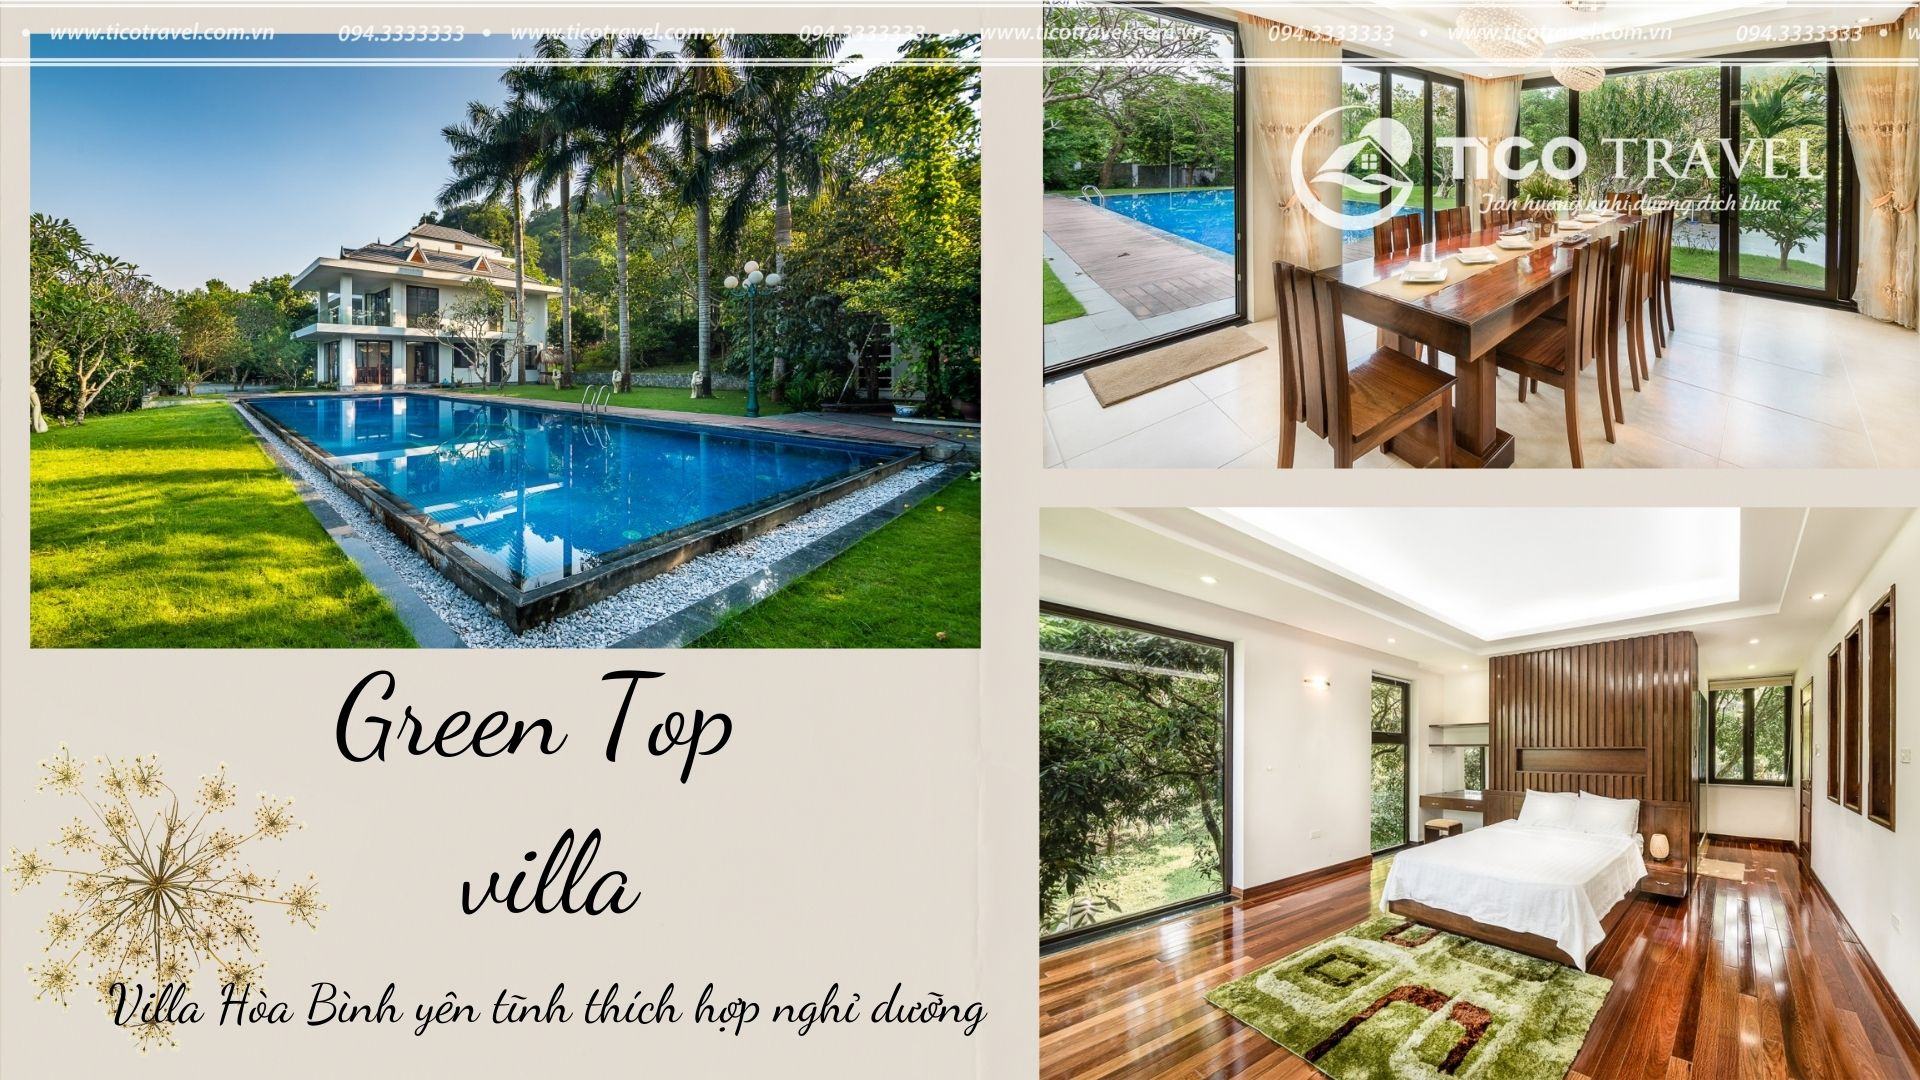 Tico Green Top - villa quanh Hà Nội giá rẻ view rừng thông